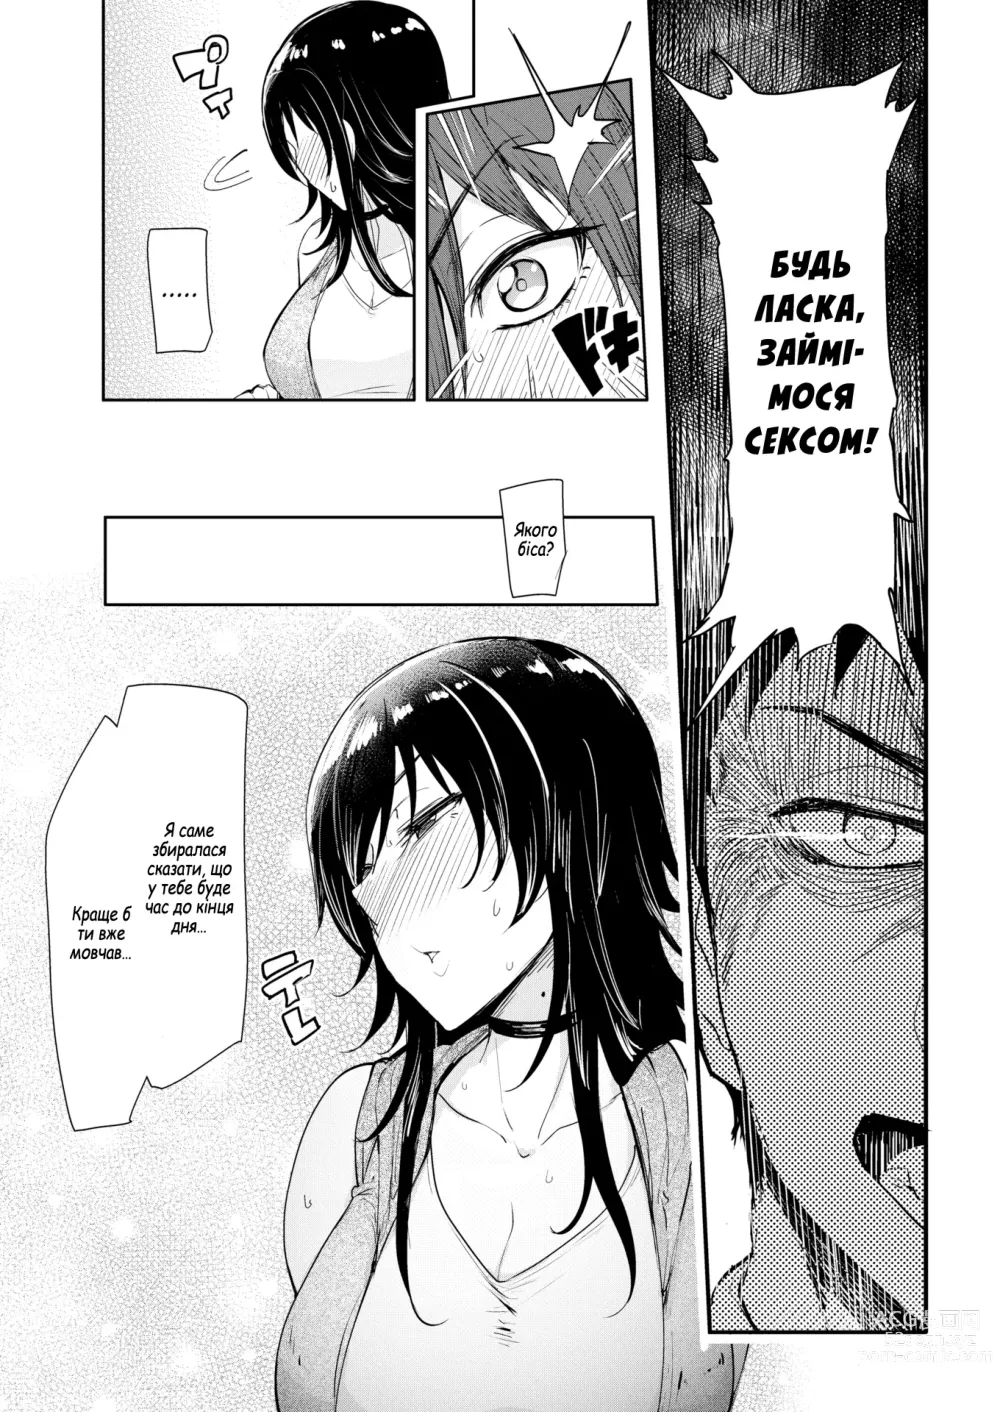 Page 5 of manga Продовжуй йти до самого кінця!